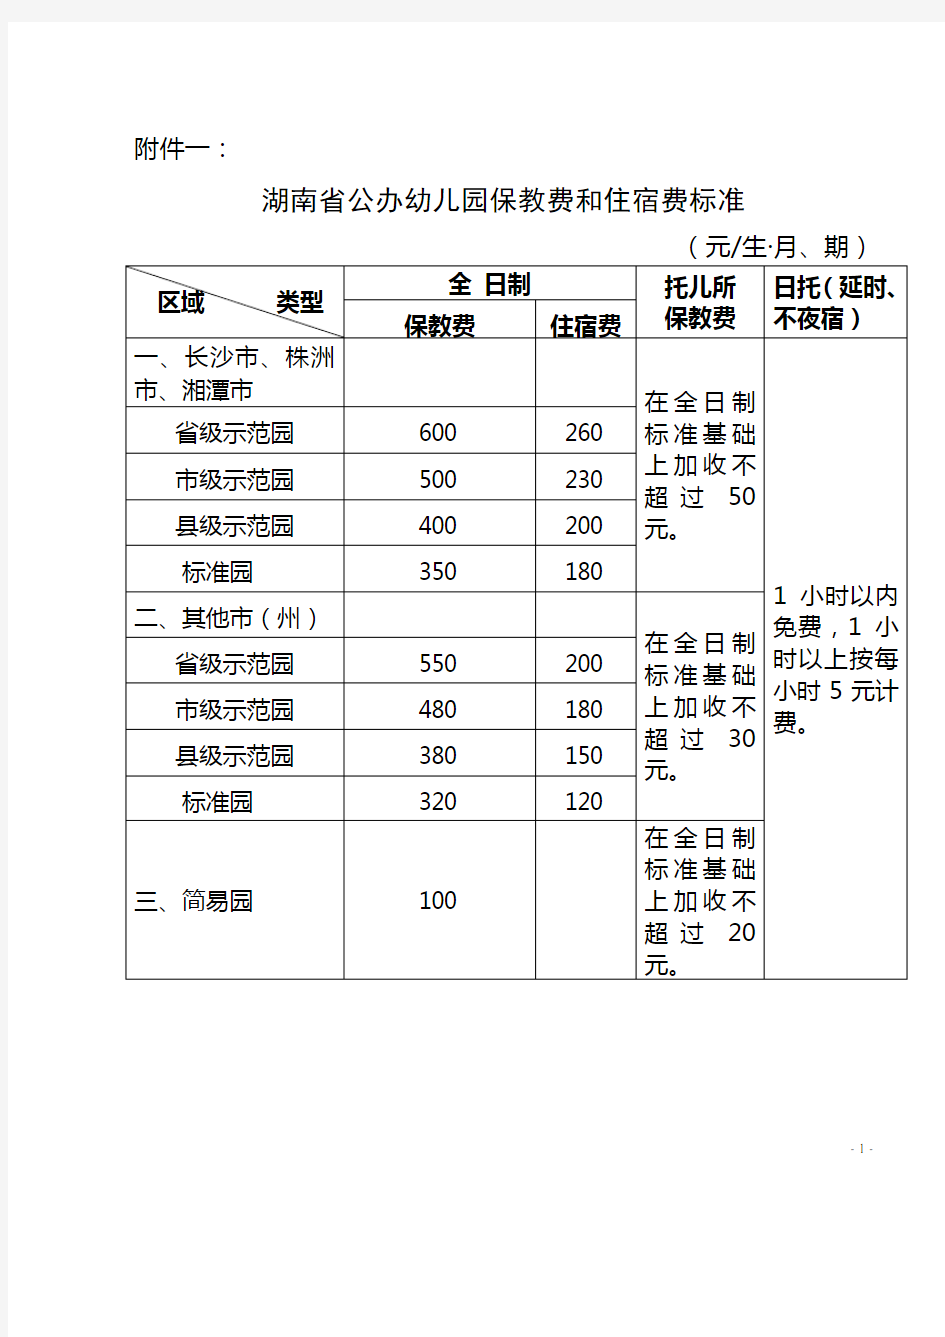 湖南省公办幼儿园保教费和住宿费标准